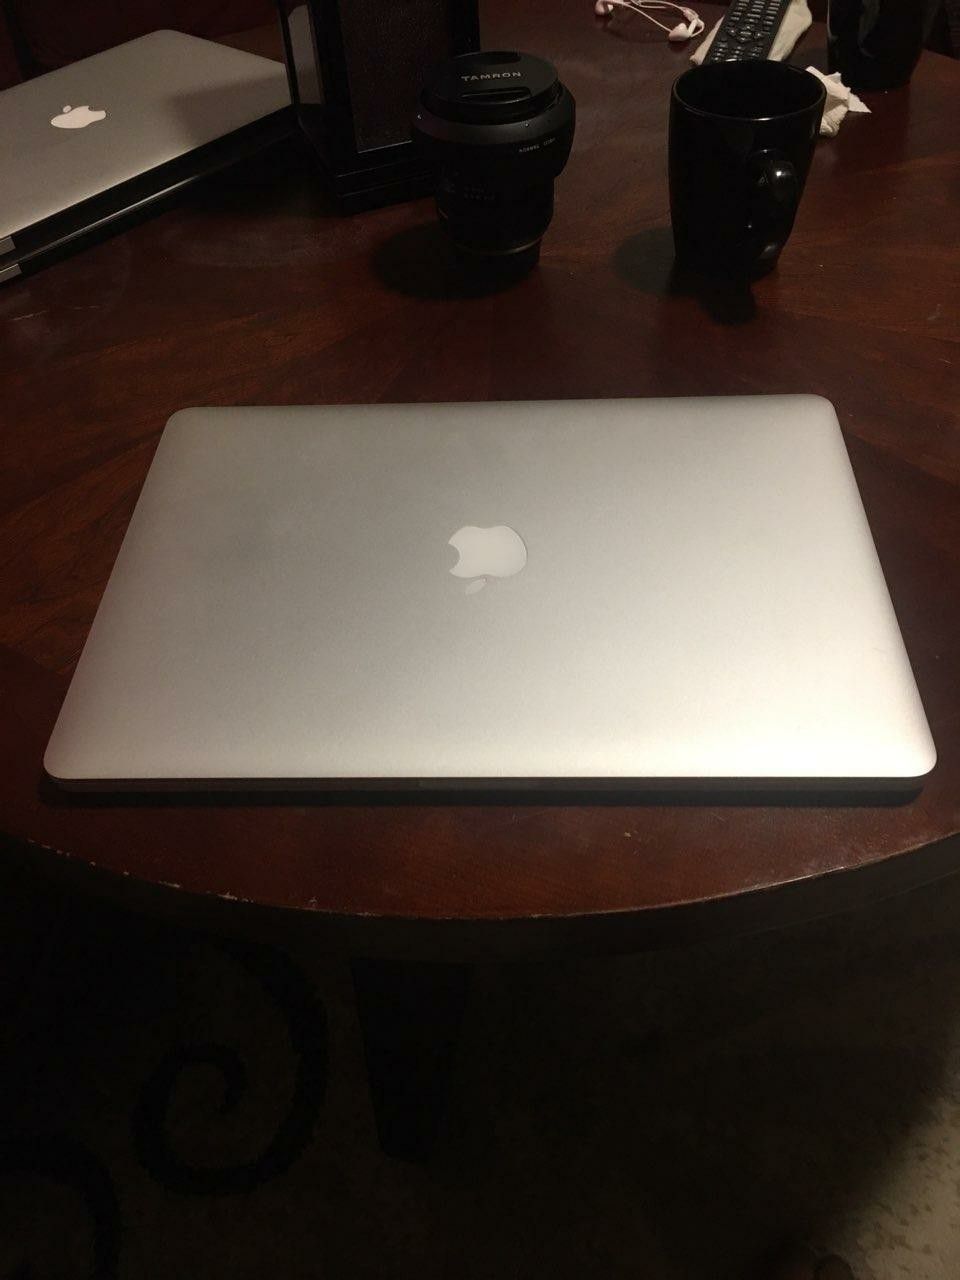 2015 15.4in Macbook Pro